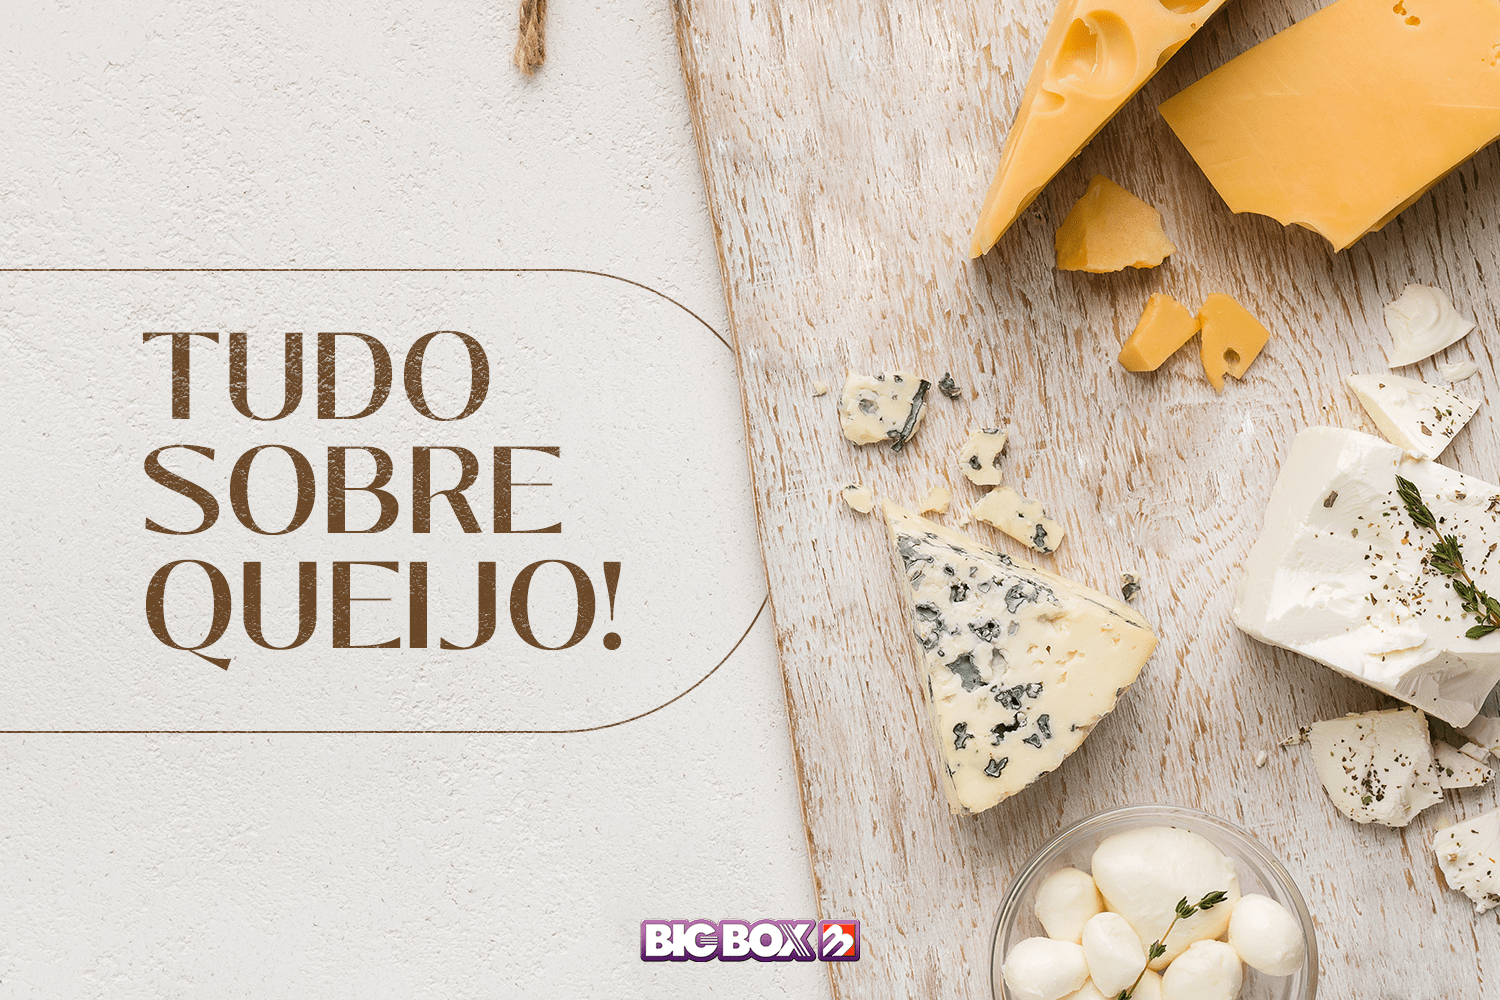 Tudo sobre queijo! Conheça a origem, harmonização e curiosidades dos queijos mais consumidos pelos brasileiros!